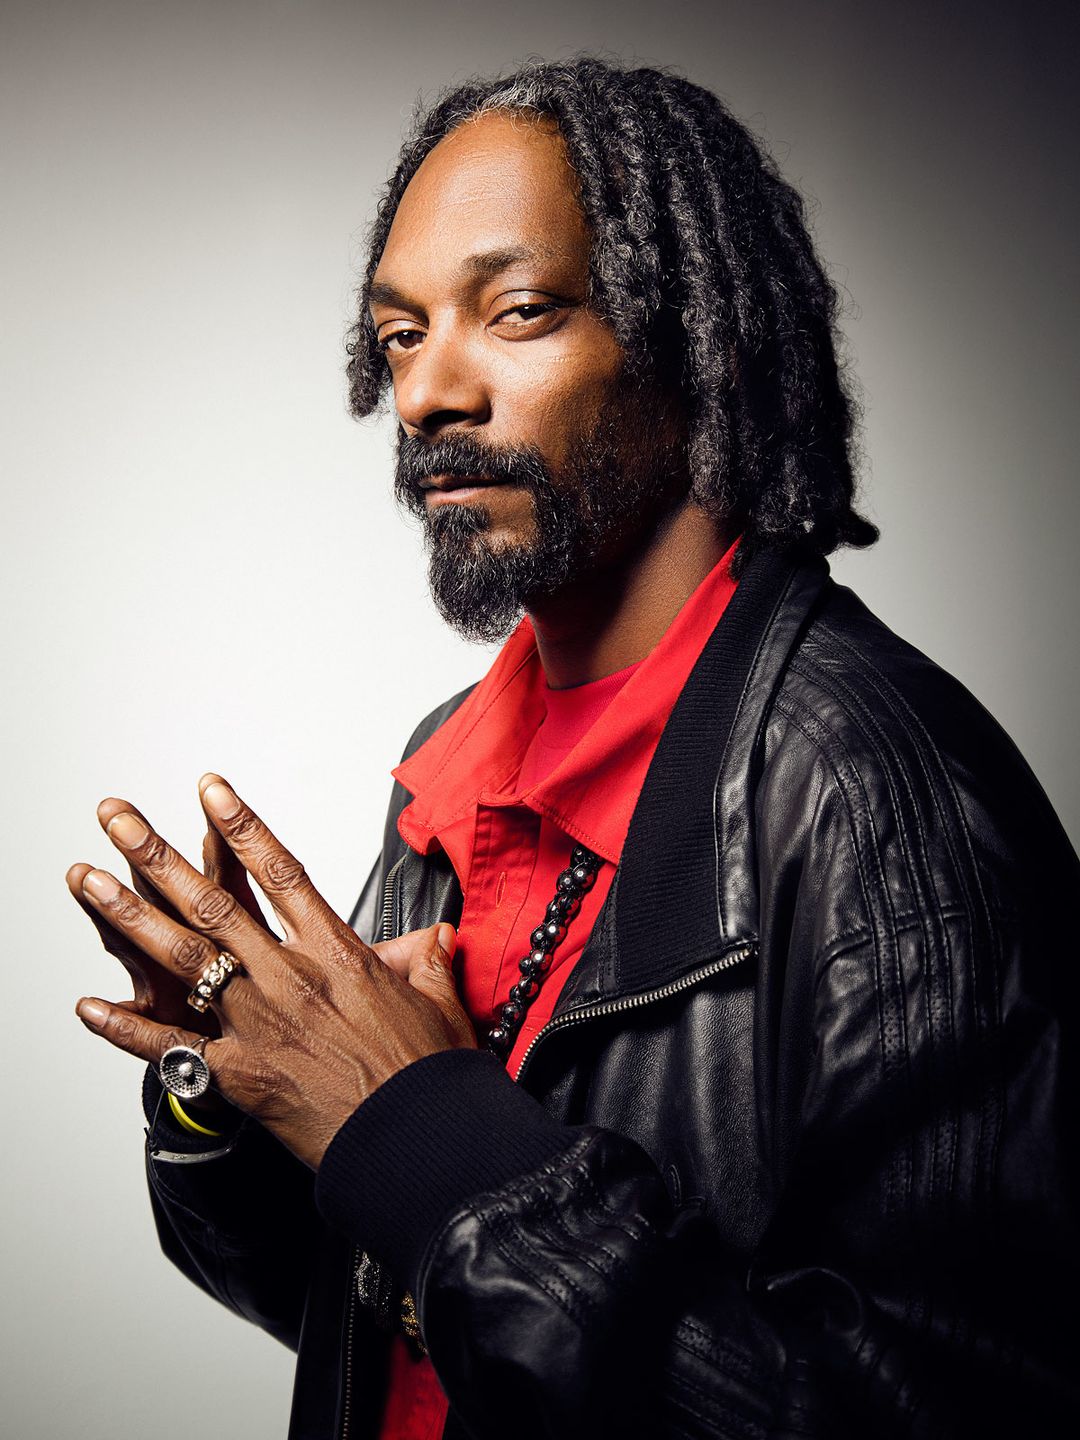 Snoop Dogg early career